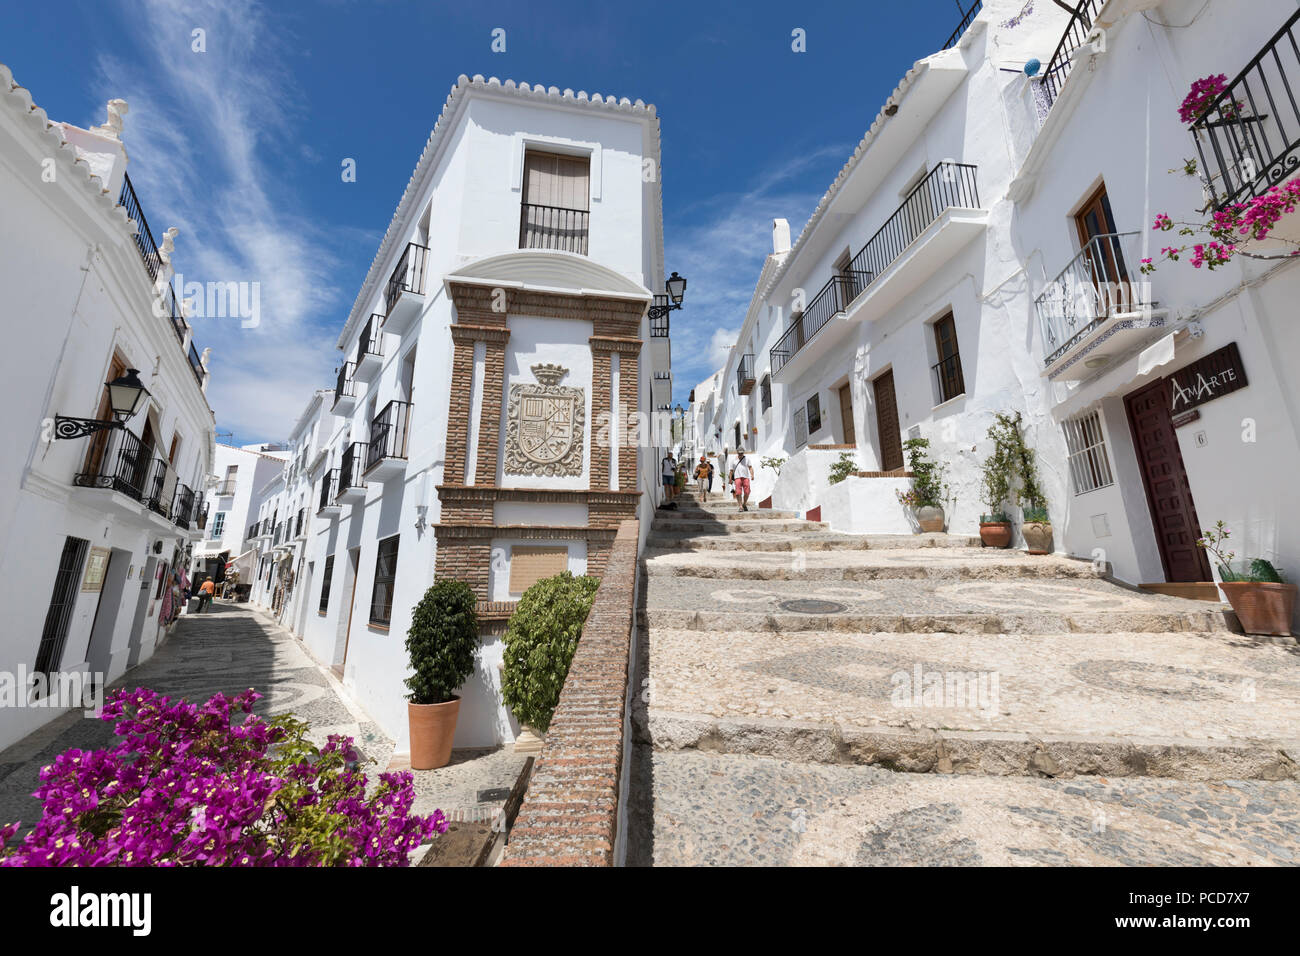 Schmale Gassen mit weiß getünchten andalusischen Häusern, Frigiliana, Provinz Malaga, Costa del Sol, Andalusien, Spanien, Europa Stockfoto